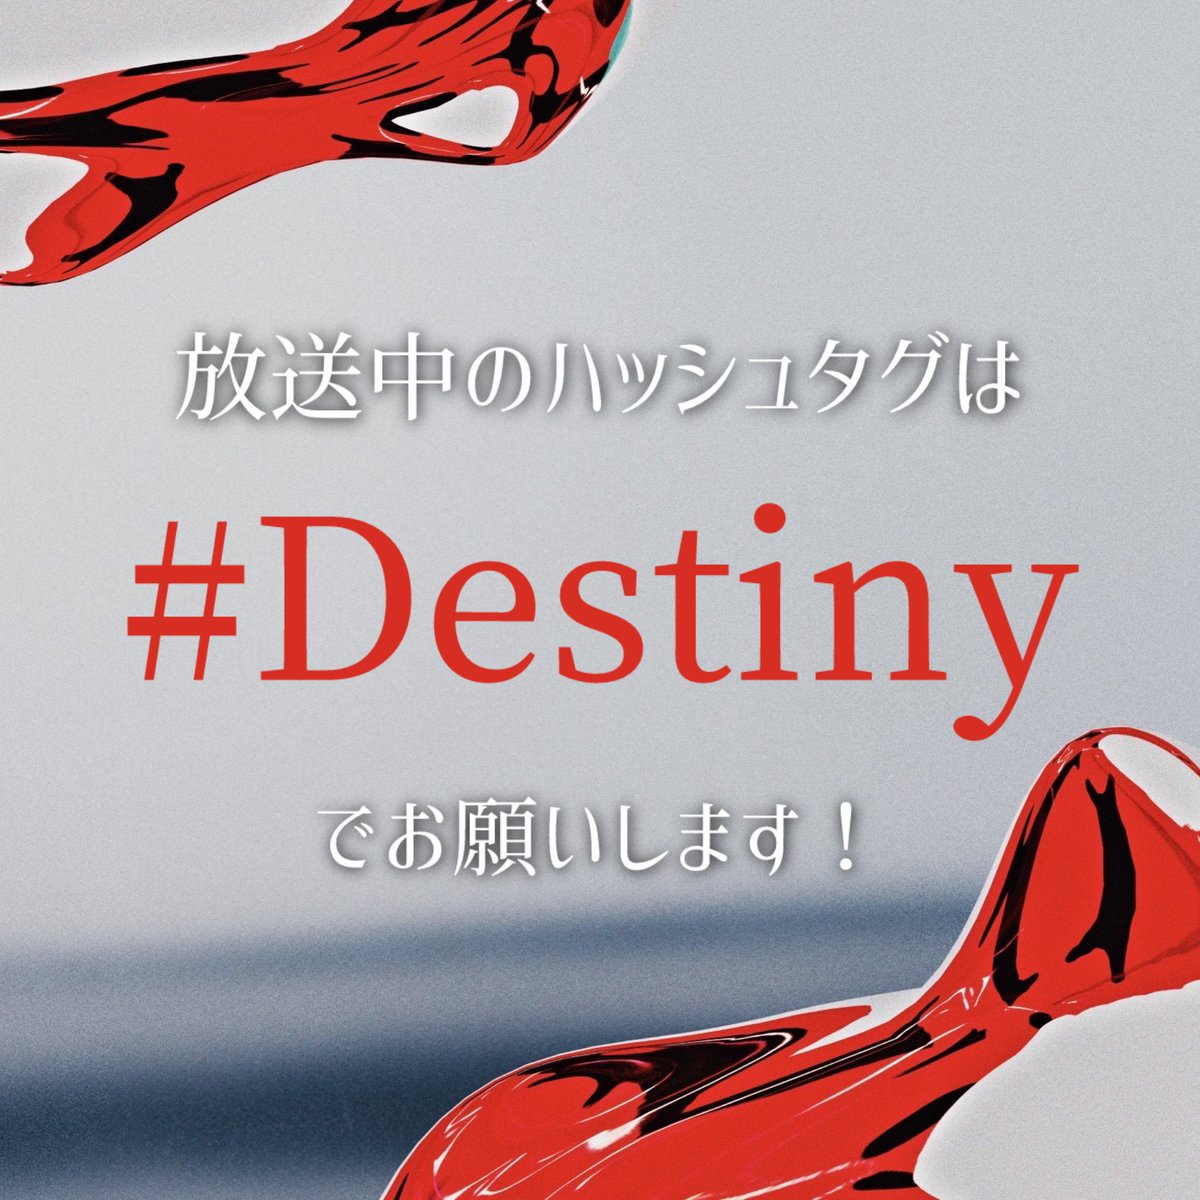 まもなく、第3話OA！ 放送中のハッシュタグは 【#Destiny】 でお願いします🗯 #石原さとみ #亀梨和也